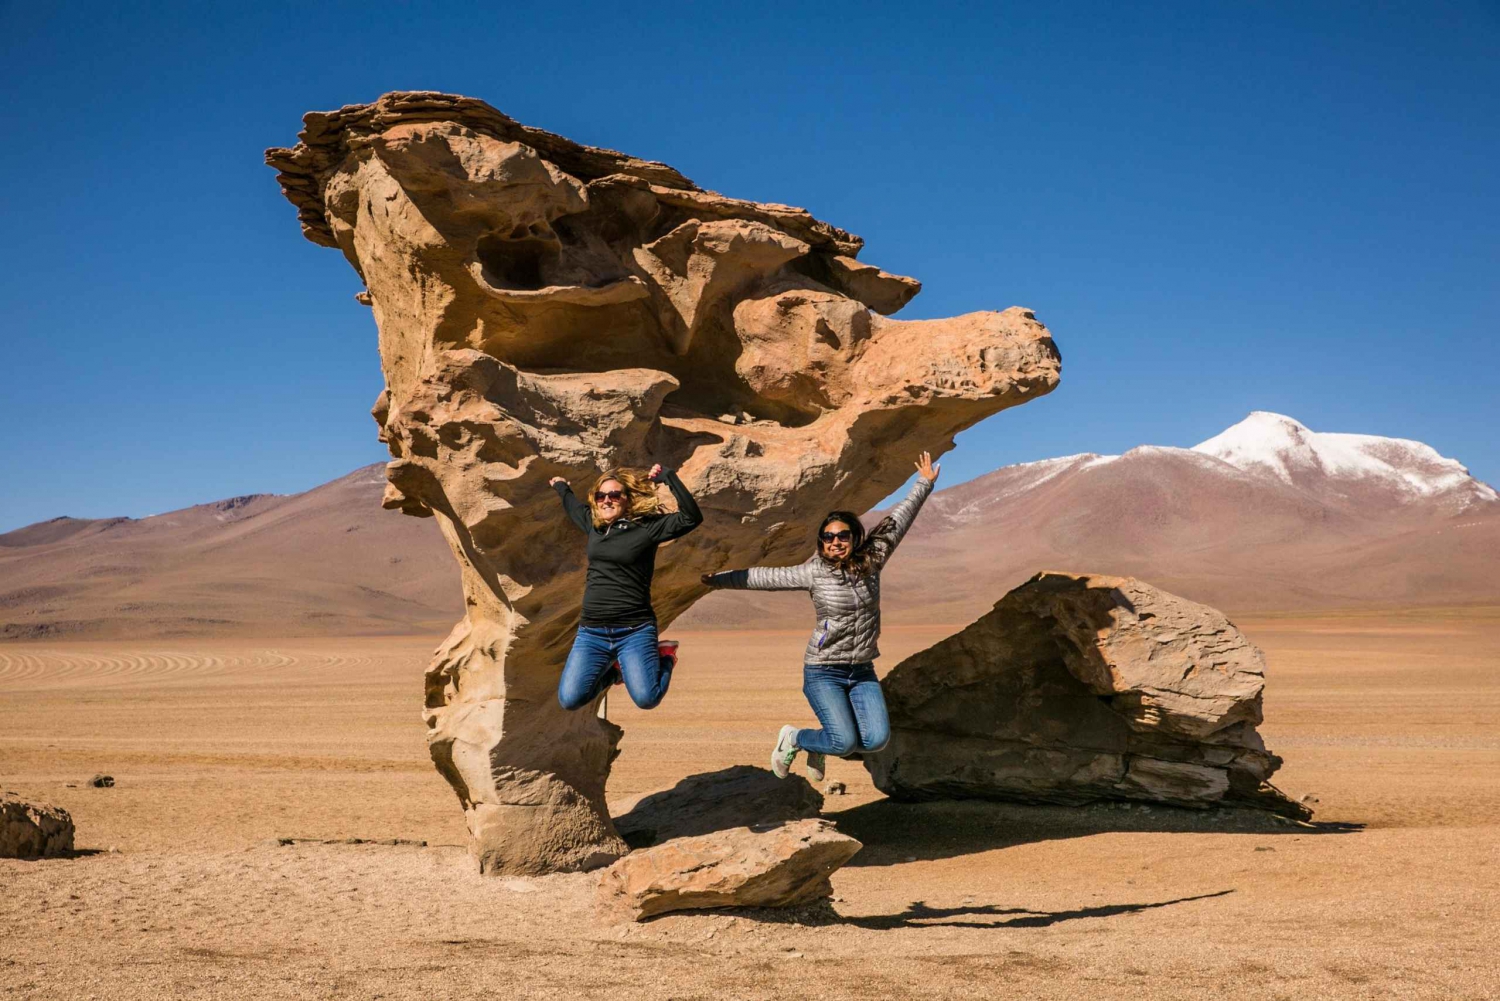 From San Pedro de Atacama |4-day tour to the Uyuni Salt flat